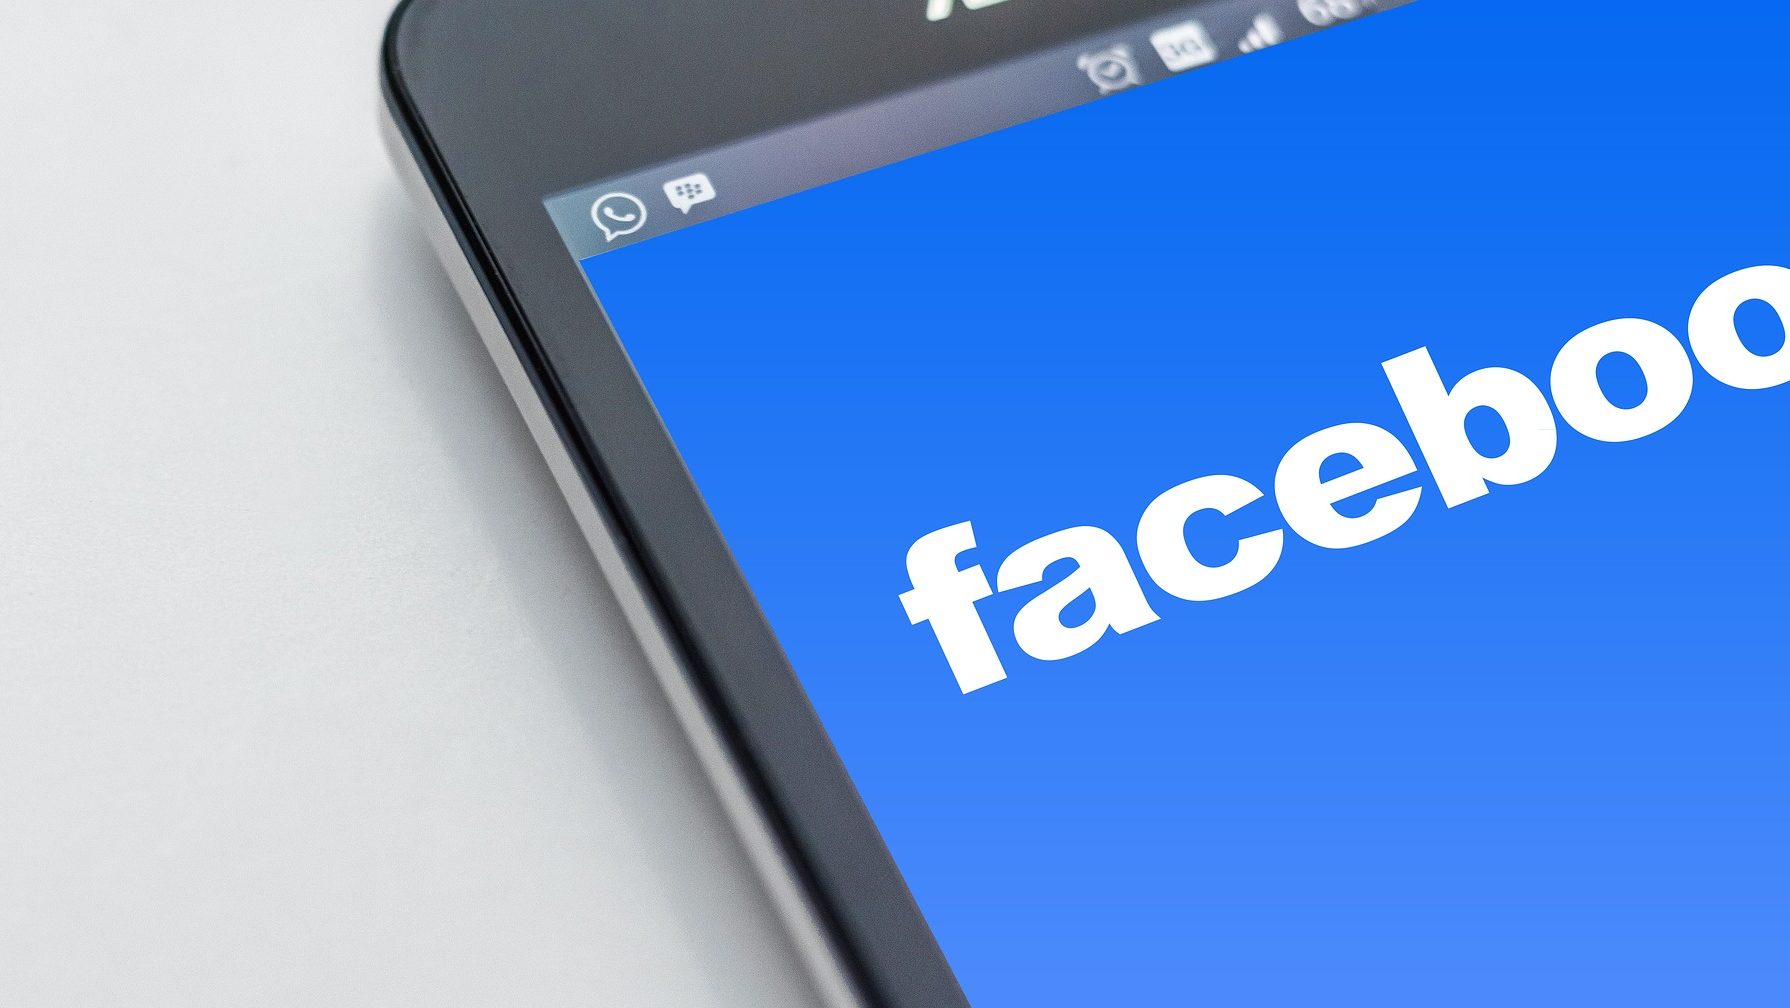 Carteira digital do Facebook, Novi está “pronta para chegar ao mercado” | Finanças